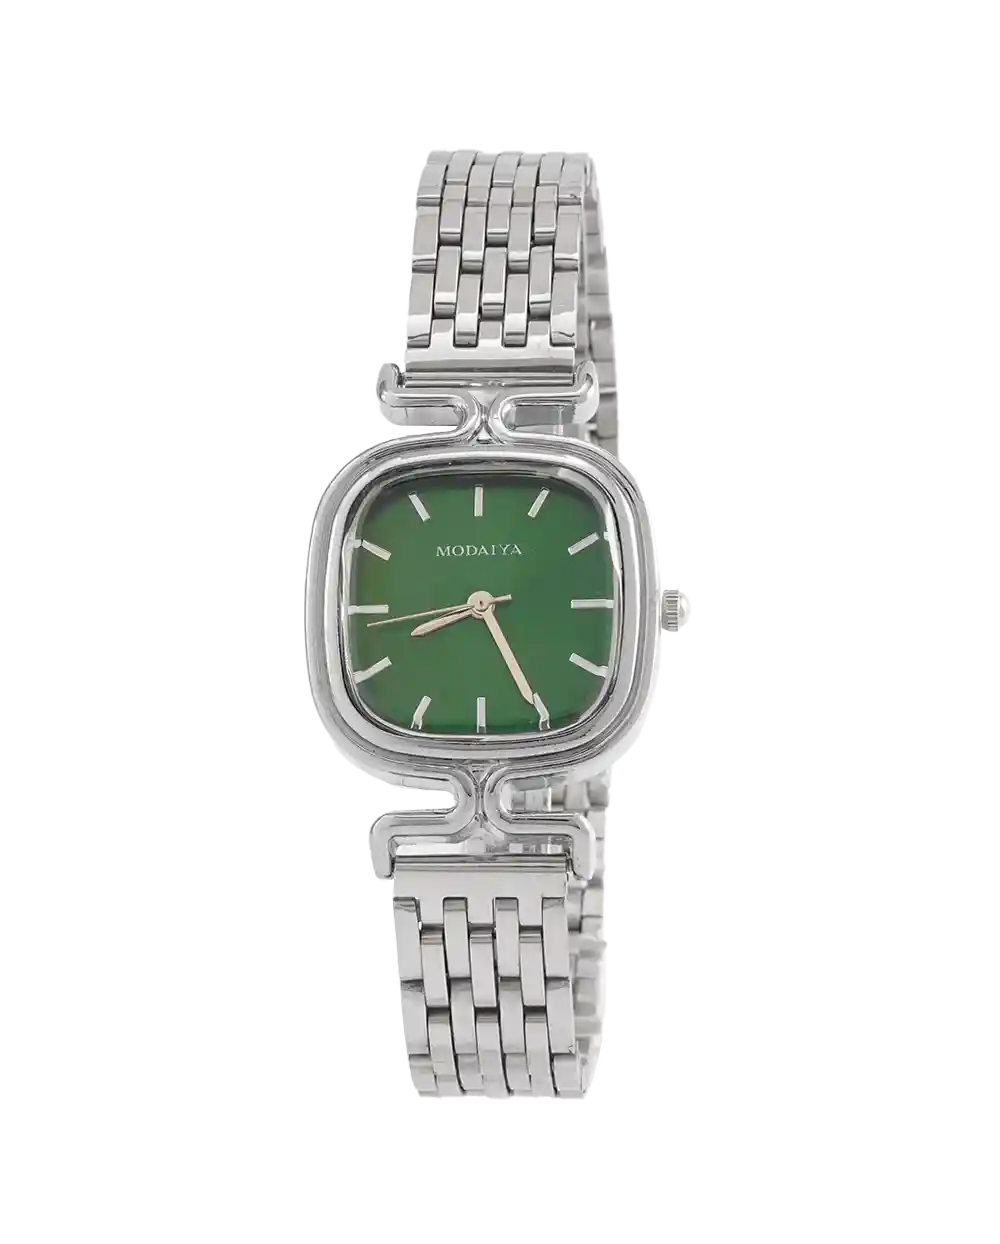 خرید ساعت مچی زنانه MODAIYA مدل 2011 بند استیل نقره ای و صفحه سبز رنگ ثابت بهترین قیمت به همراه ارسال رایگان به سراسر ایران و جعبه